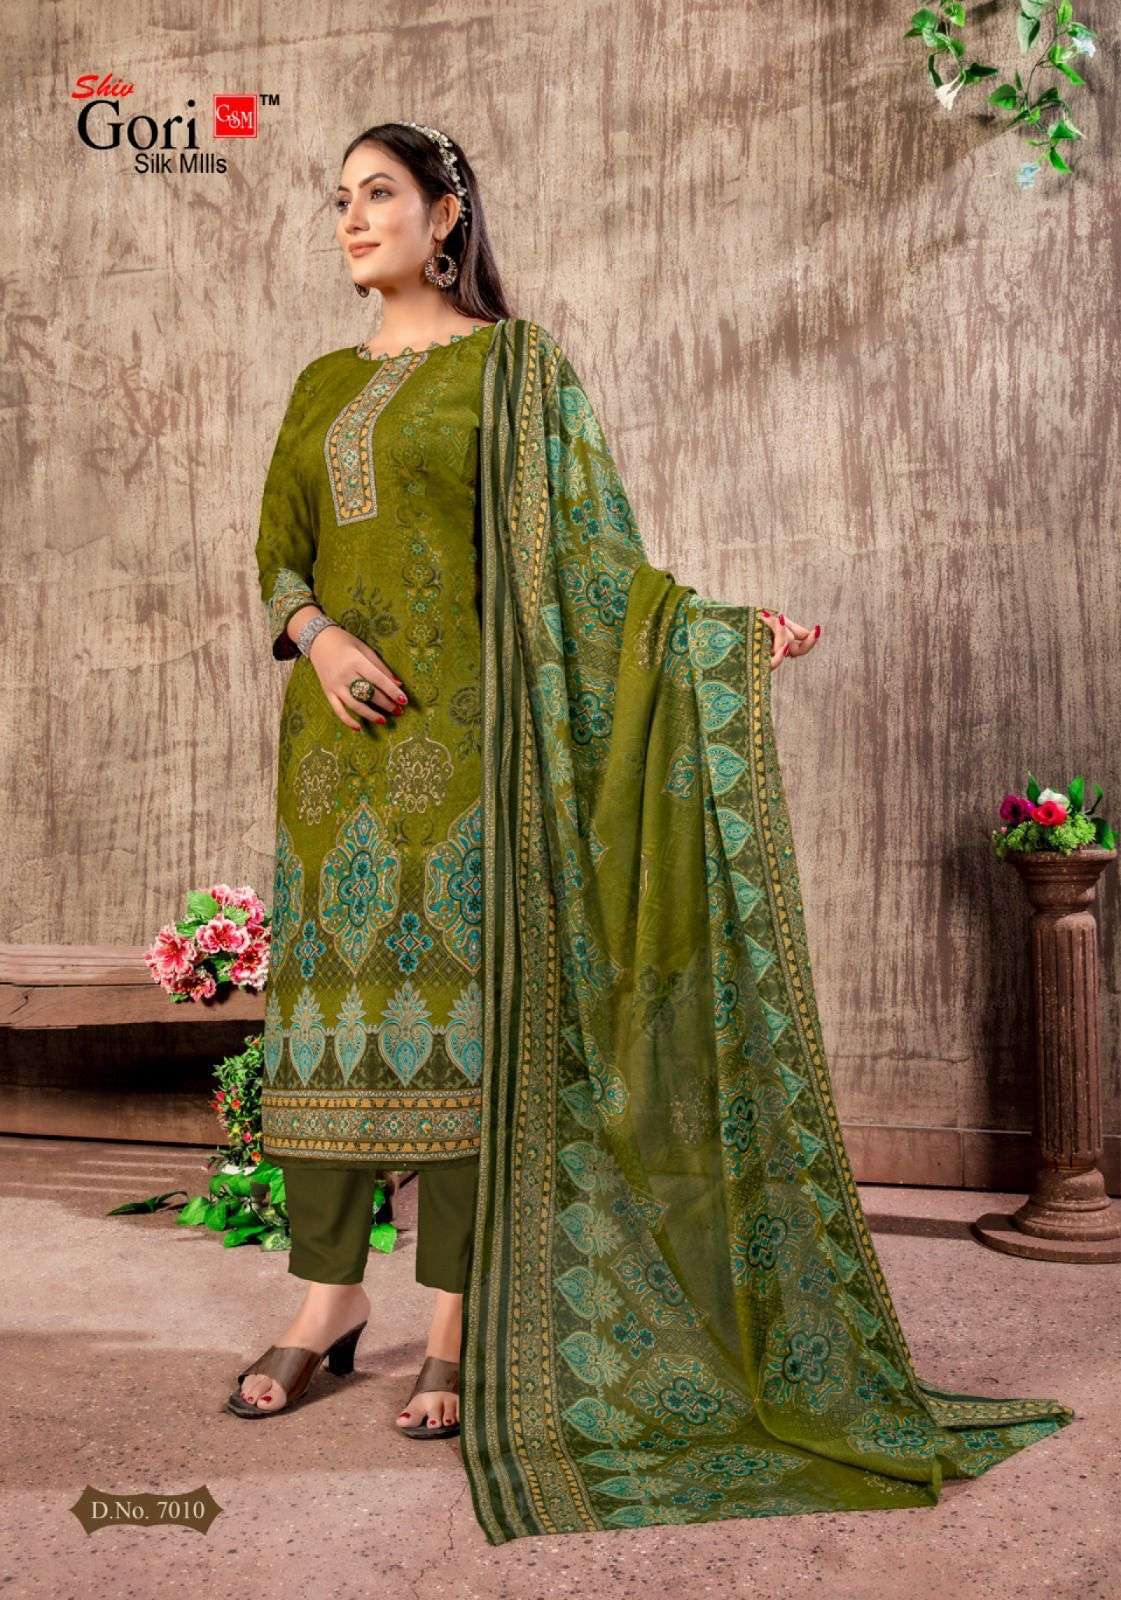 shiv gori silk mills sonpari vol-7 7001-7010 series unstich designer salwar kameez catalogue design 2023 